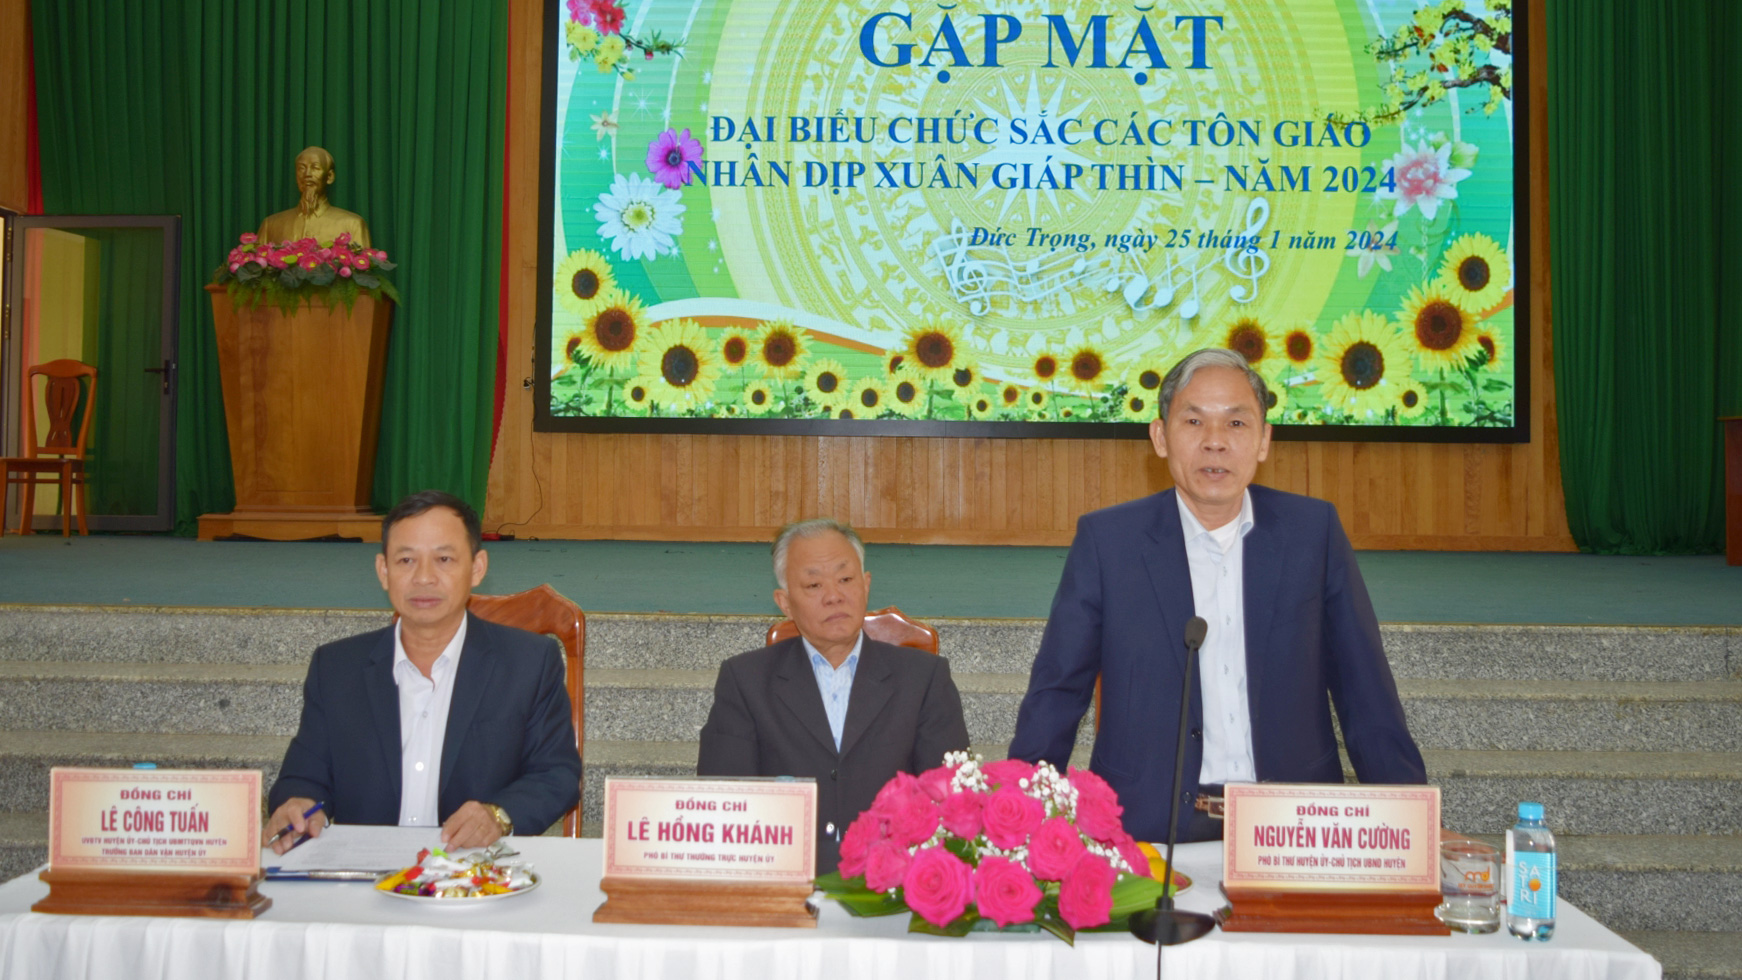 Đồng chí Nguyễn Văn Cường - Chủ tịch UBND huyện, tiếp thu và giải trình các ý kiến của đại biểu